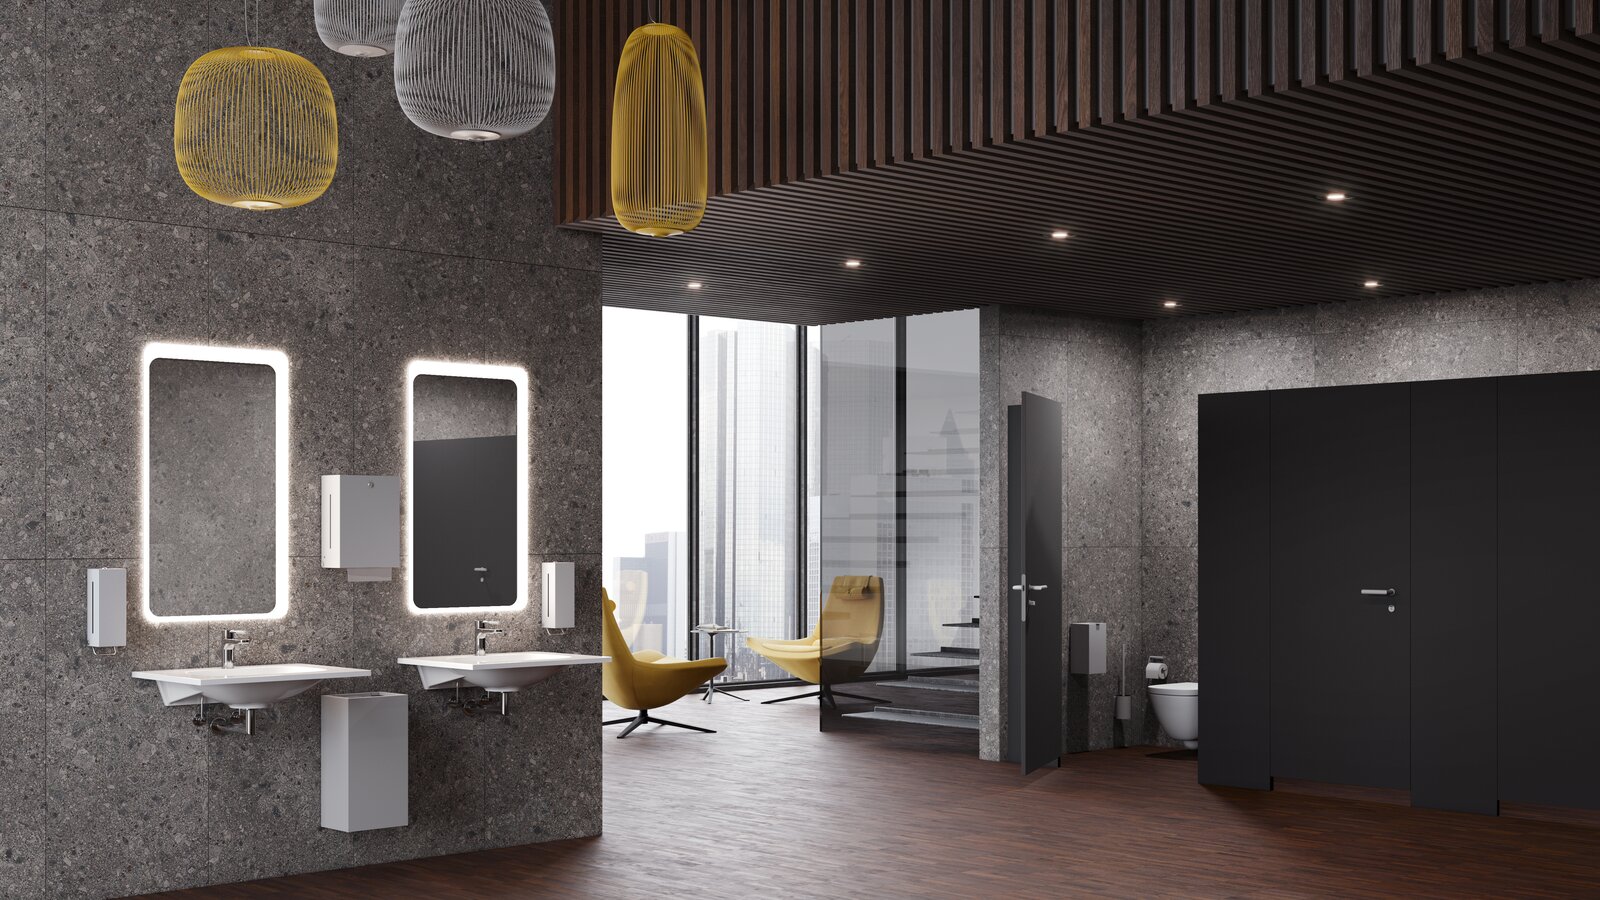 Öffentlicher Waschplatz ausgestattet mit HEWI Seifen- und Papiertuchspender in Hellgrau matt, WC-Kabine ausgestattet mit HEWI WC-Bürste und Papierrollenspender in Hellgrau matt